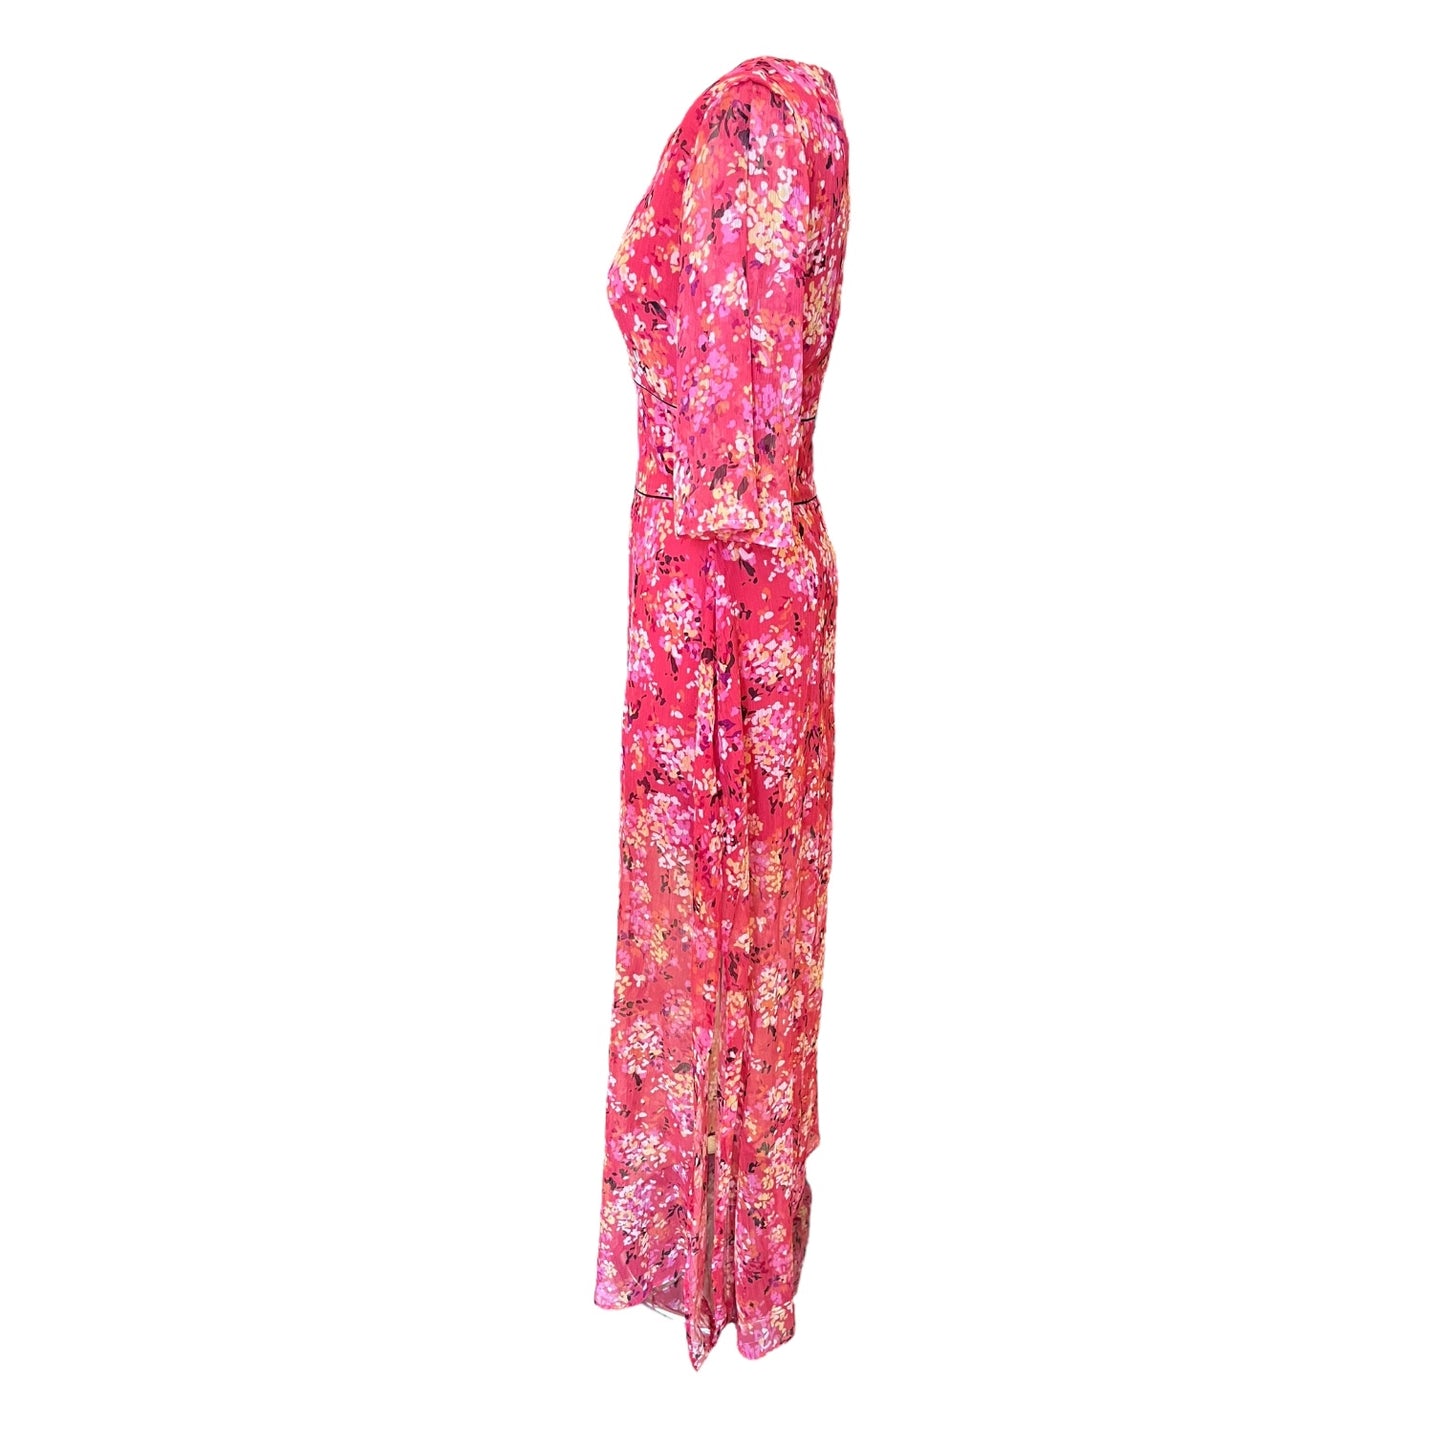 Trussardi Pink Floral Midi Dress - 8/10 - NEW